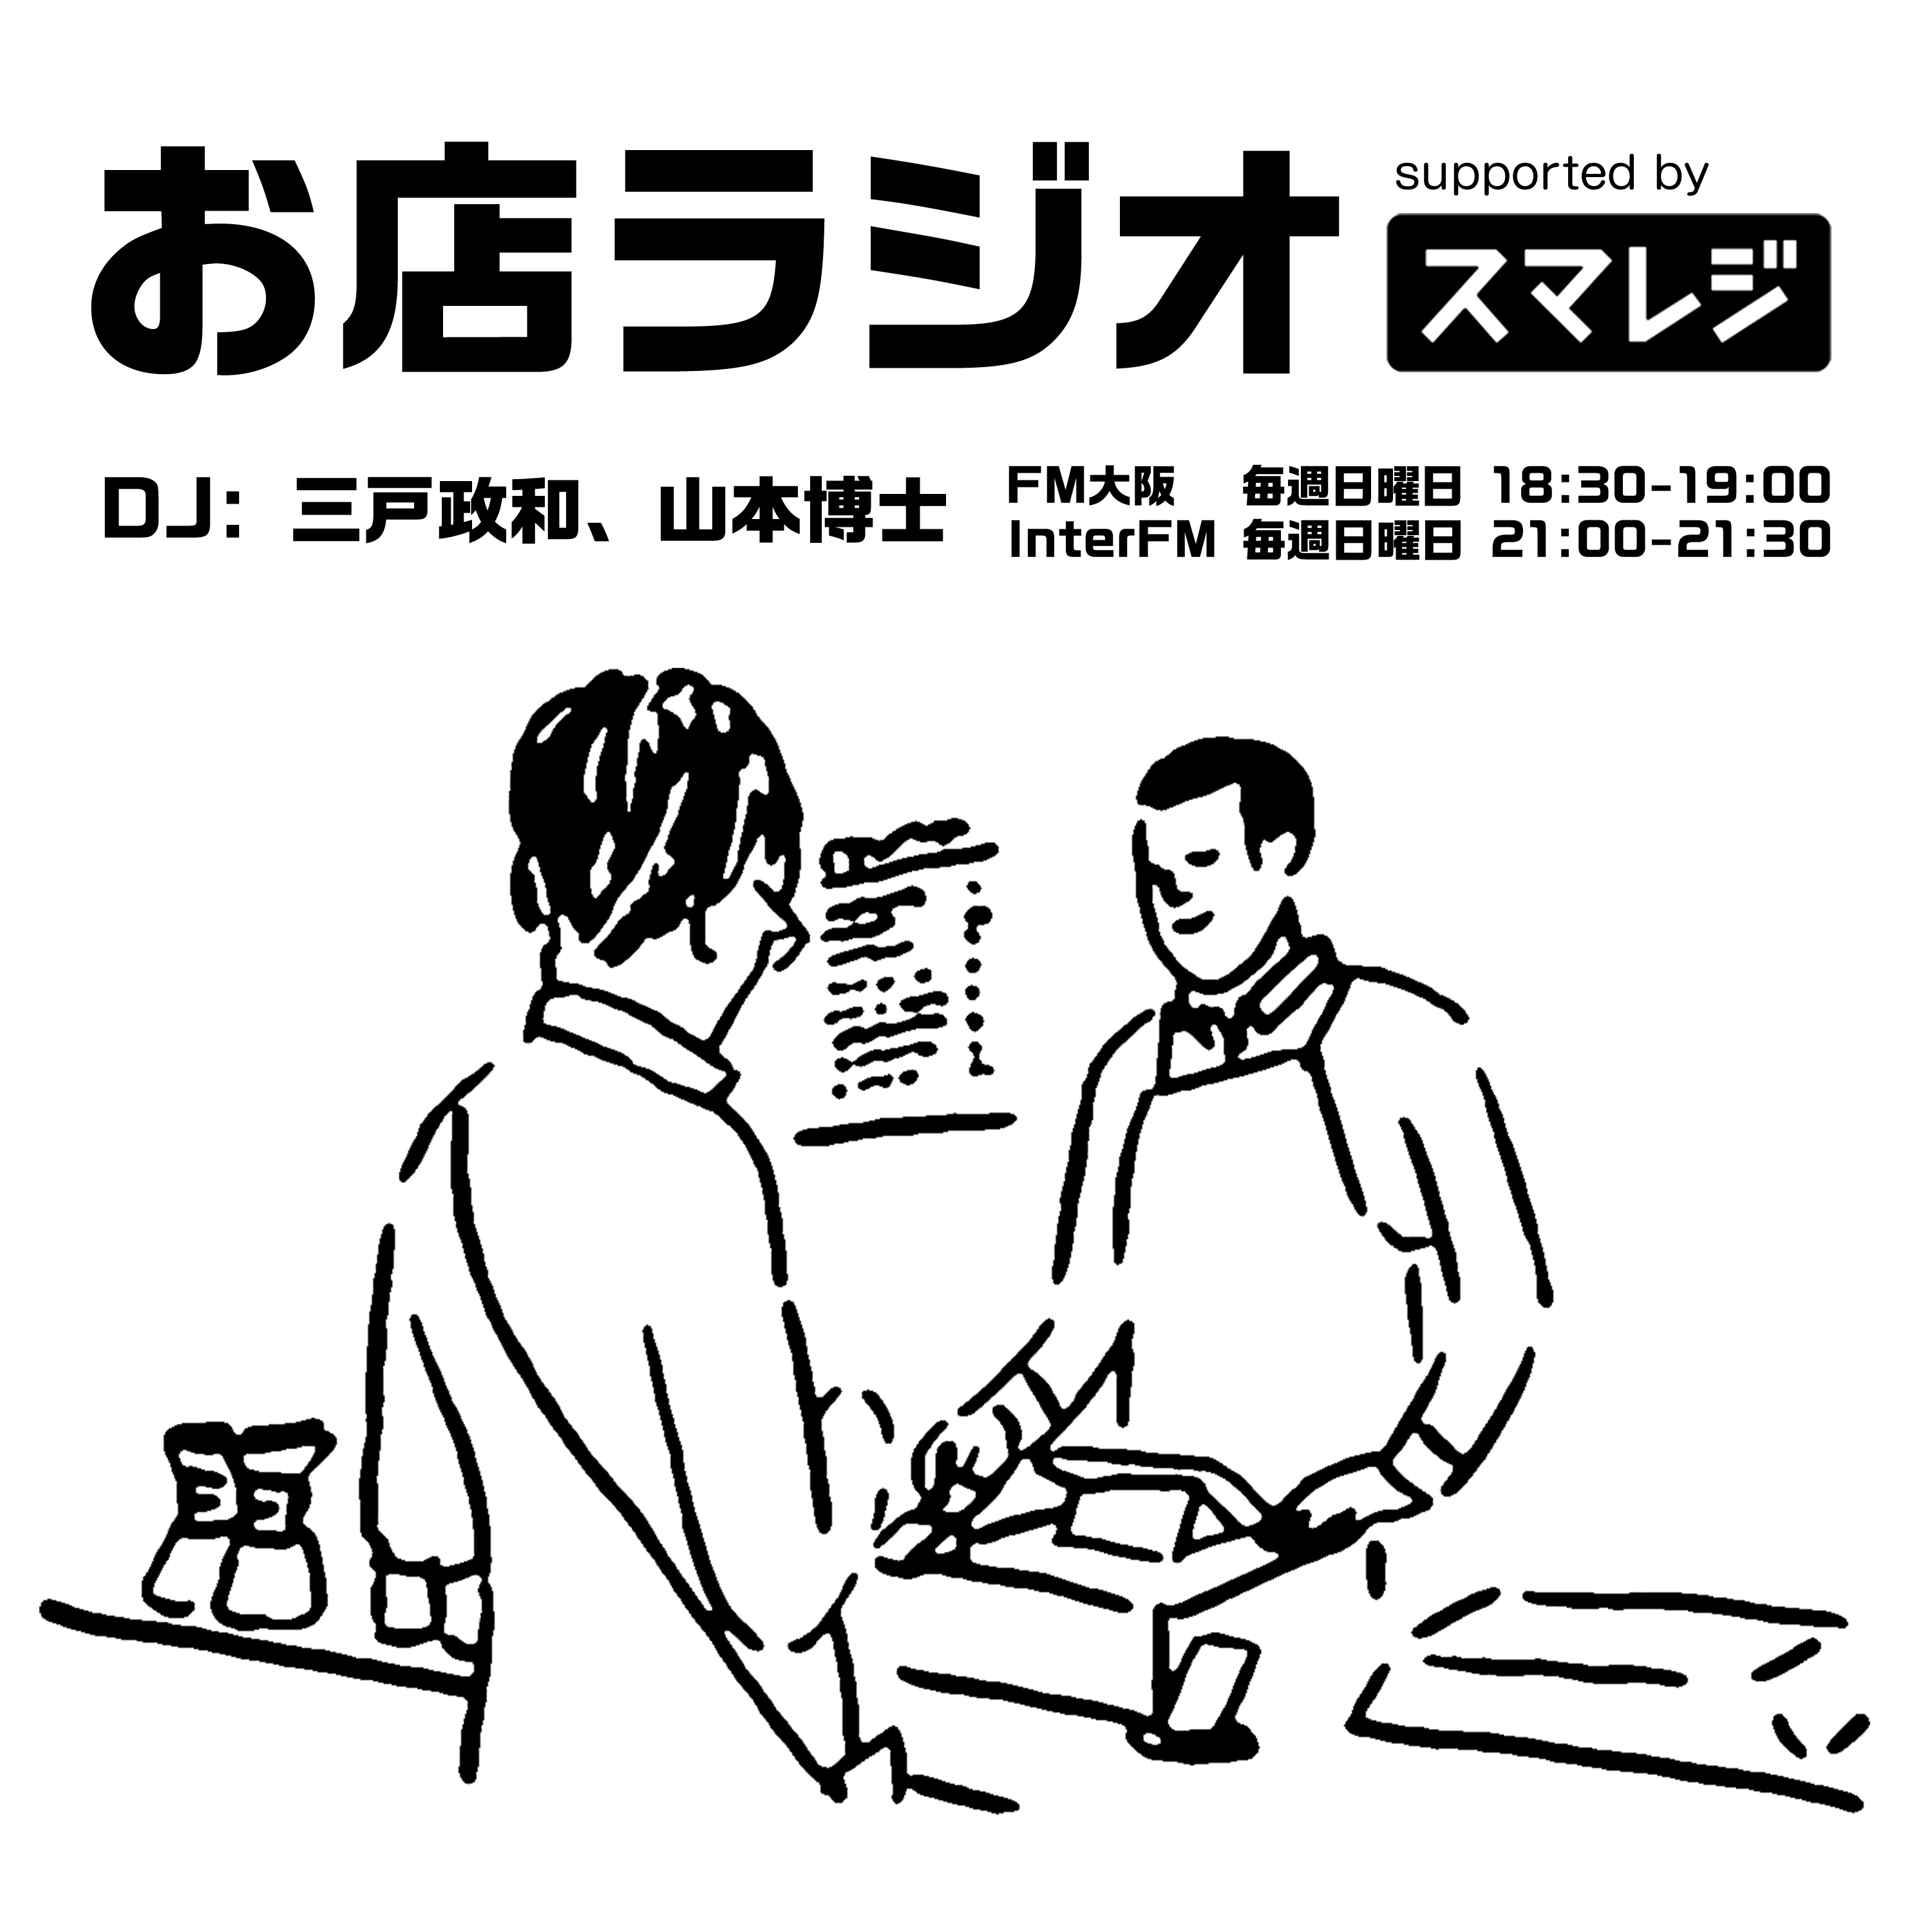 お店ラジオ supported by スマレジ #22